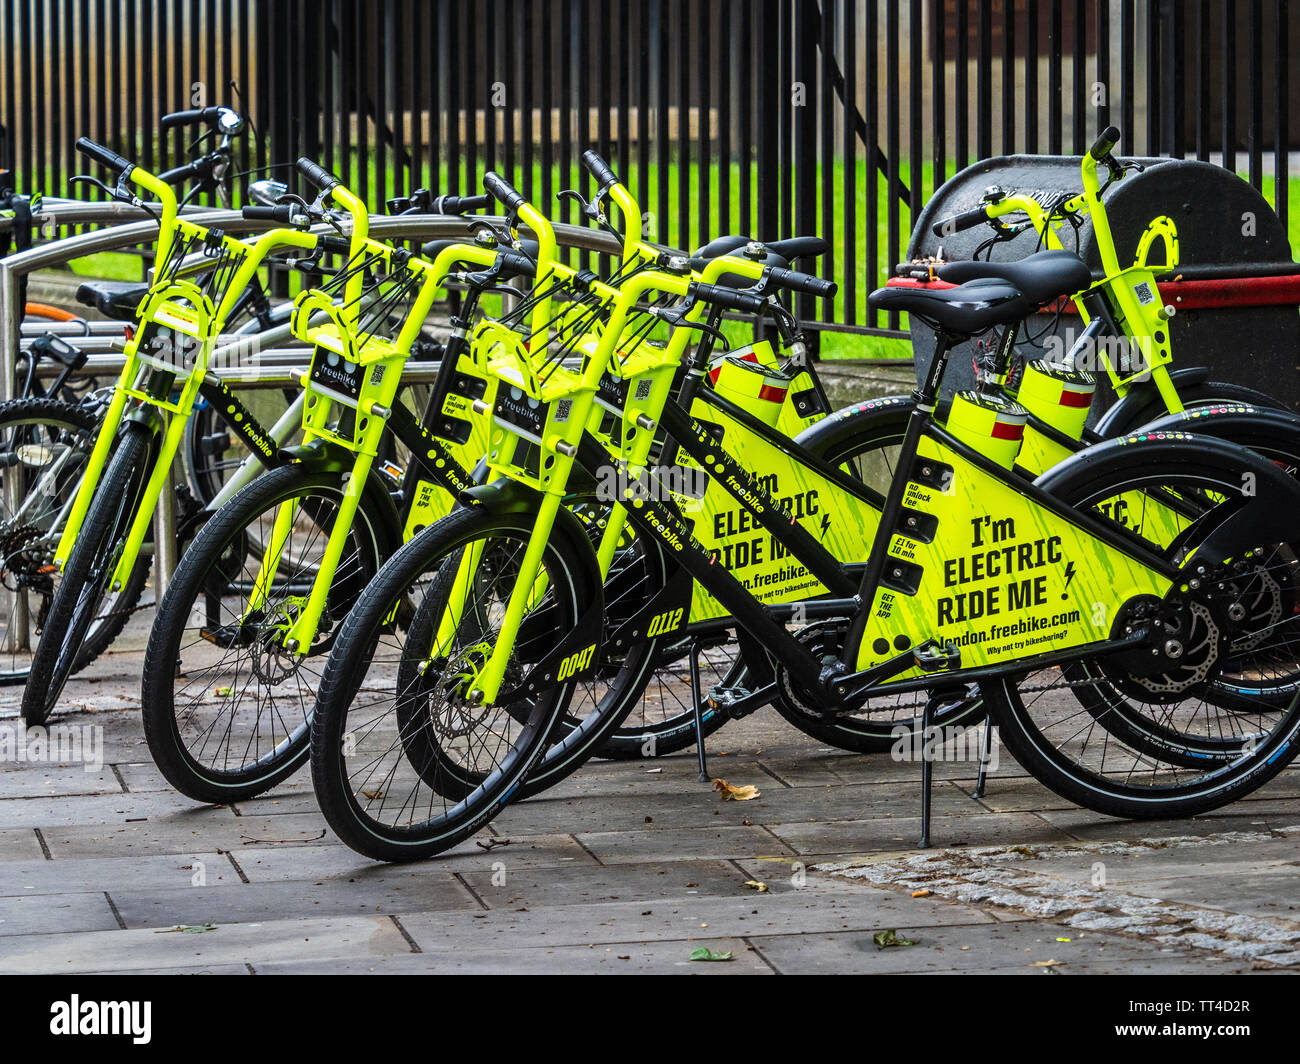 Freebike freebike - Londres vélos location de vélos électriques dans la ville de Londres. Jun 2019 Freebike lancé - 10 premières minutes gratuites, puis 1p par minute. Banque D'Images